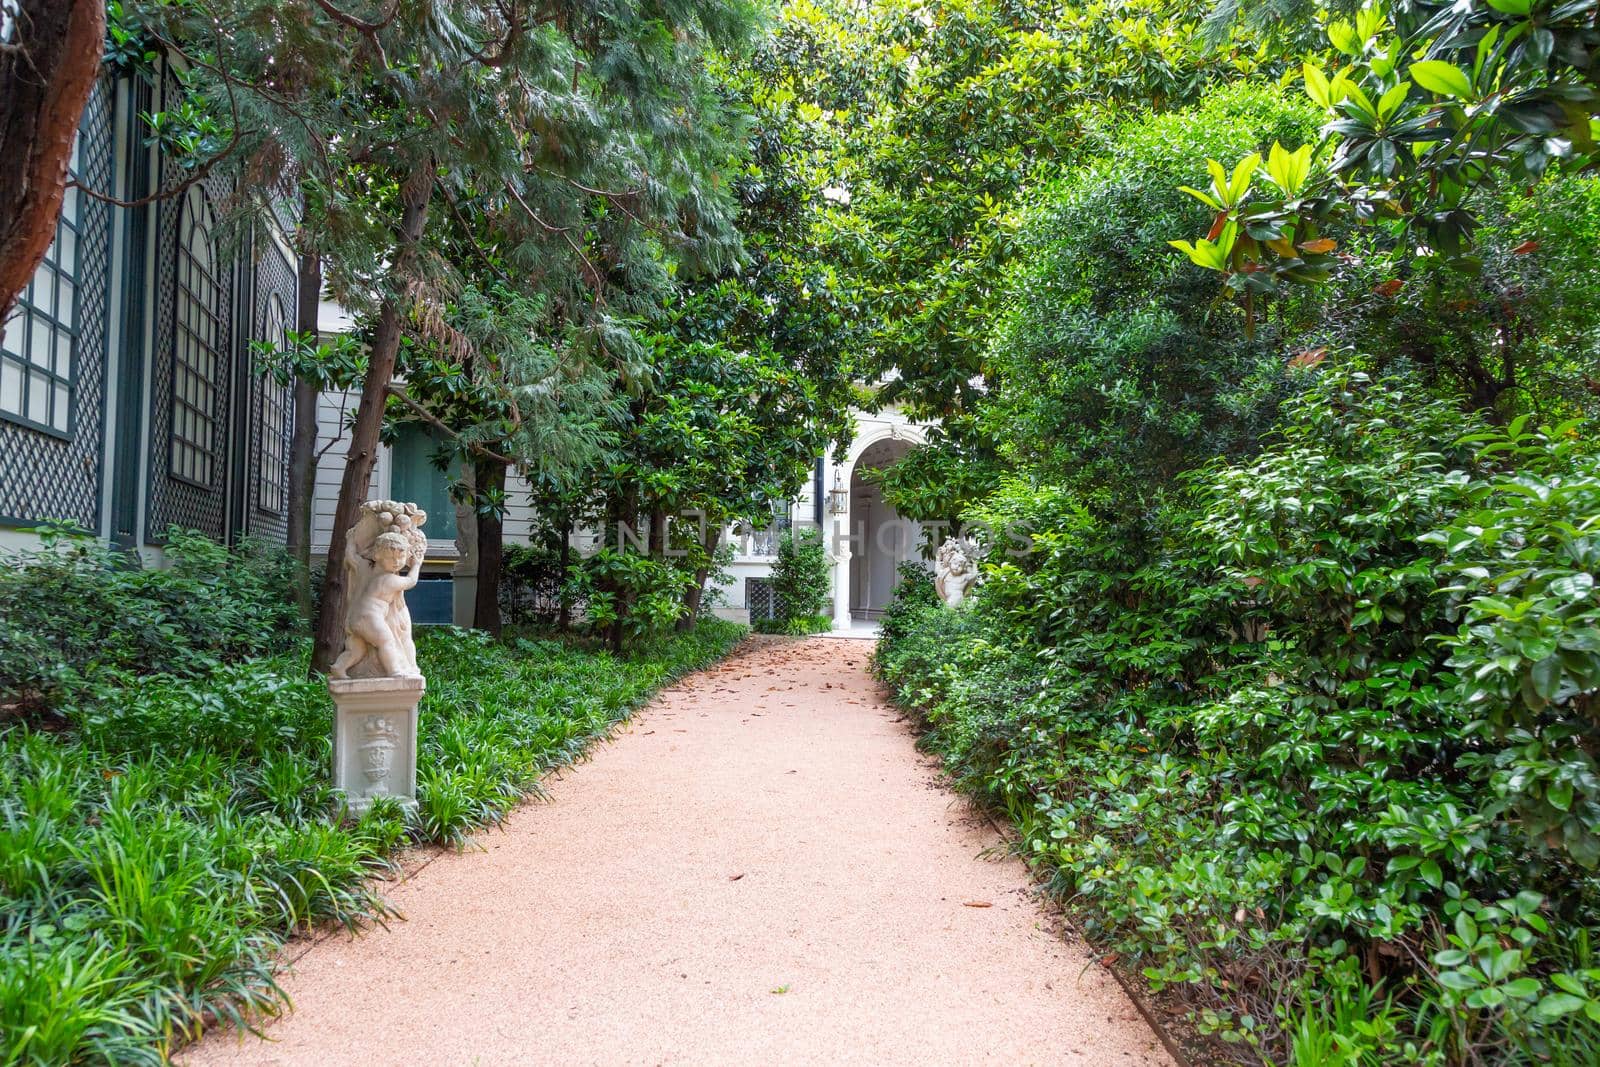 Milan, Italy - Circa June 2021: Italian Villa entrance with garden. Luxurious green exterior